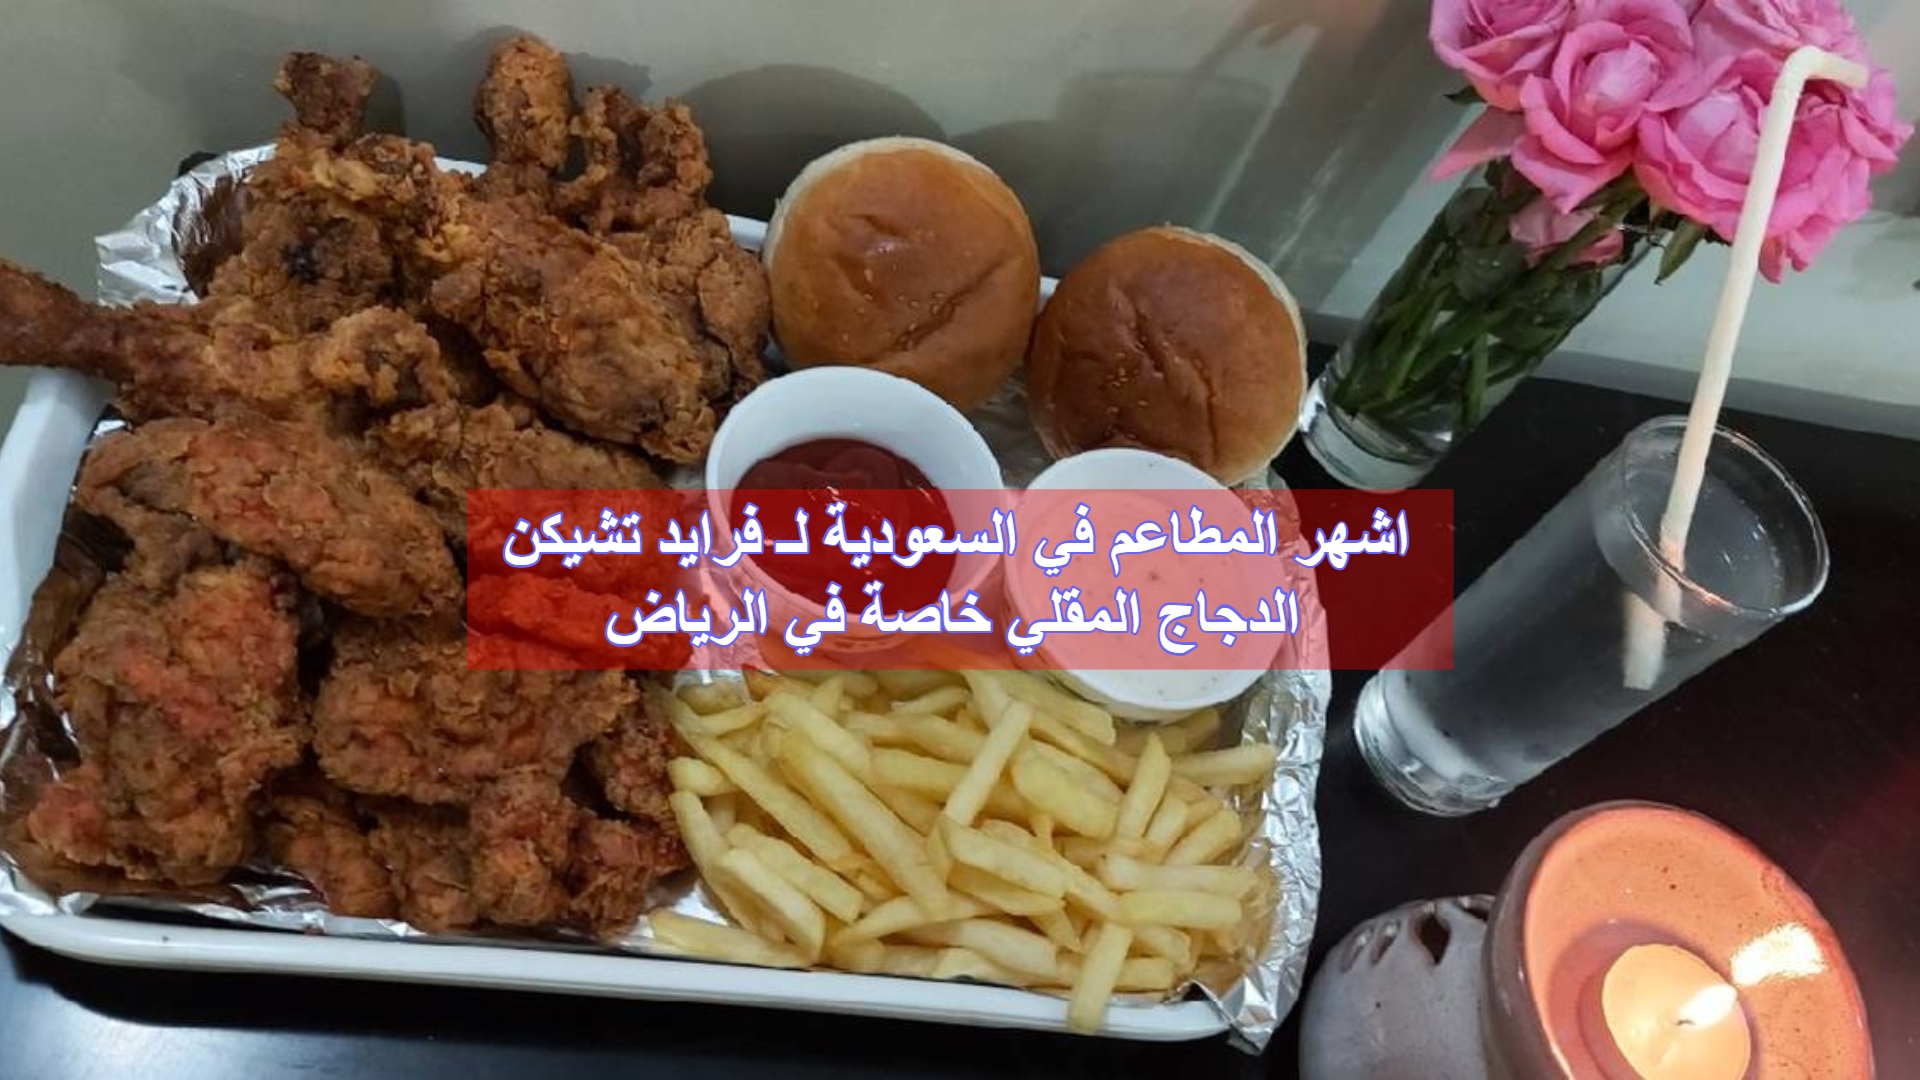 اشهر المطاعم في السعودية لـ فرايد تشيكن الدجاج المقلي خاصة في الرياض